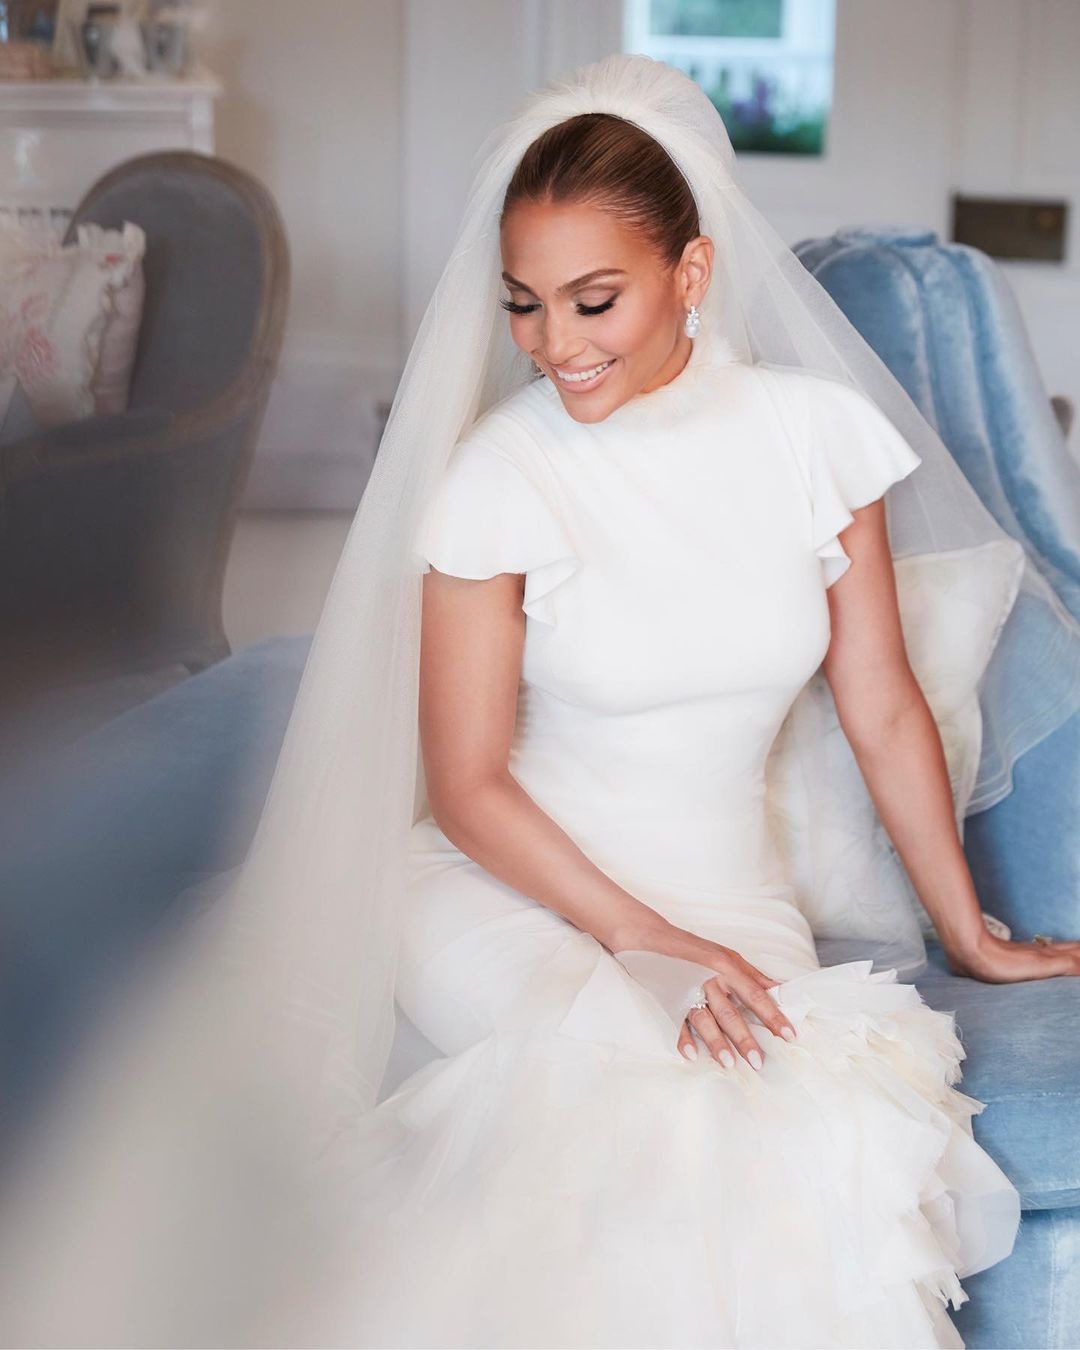 Дженнифер Лопес отметила годовщину свадьбы с Беном Аффлеком, показав новые фото со свадьбы